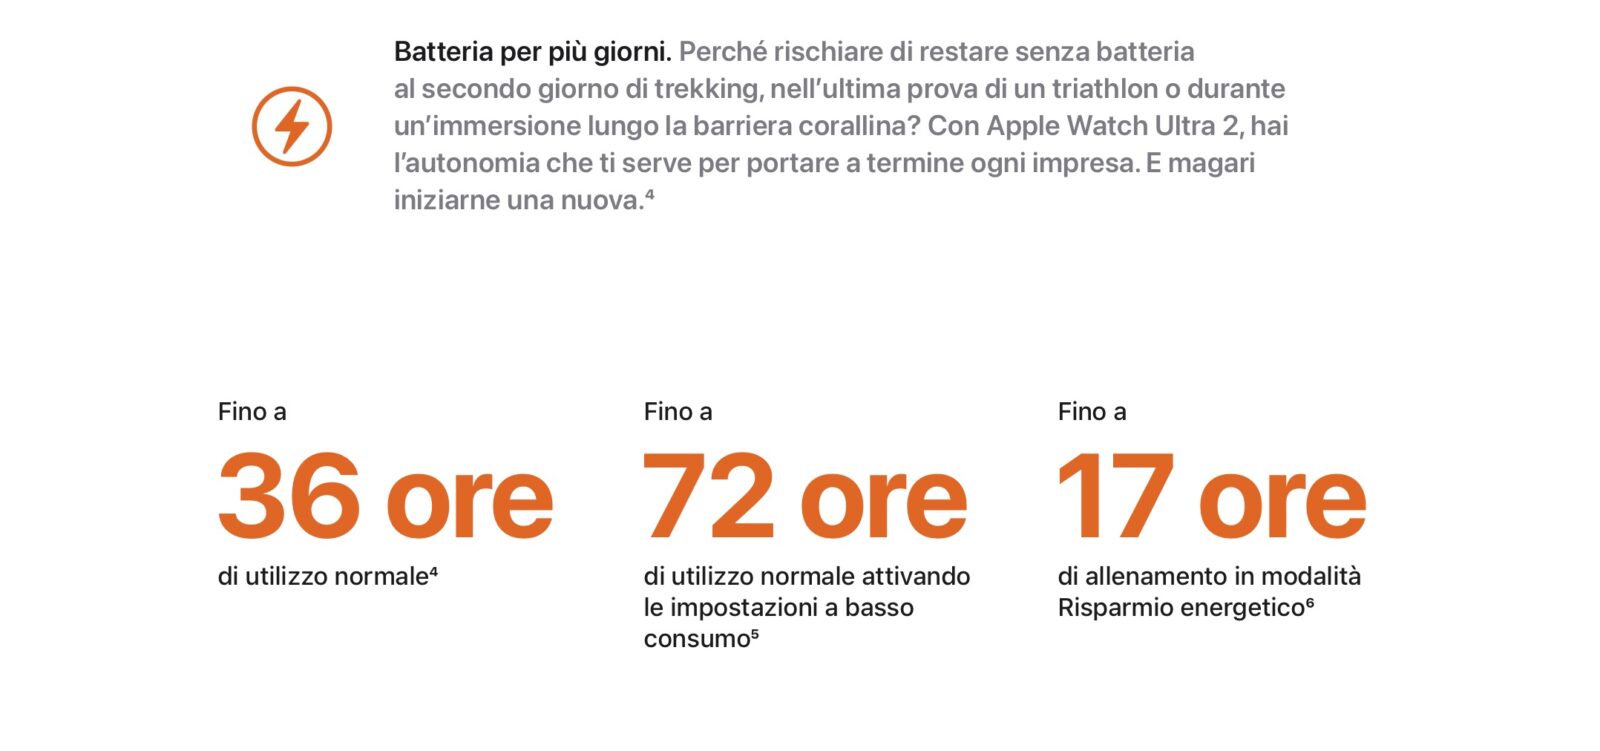 Apple Watch Ultra 2, l'autonomia di 72 ore forse è uguale alle 60 ore del primo modello